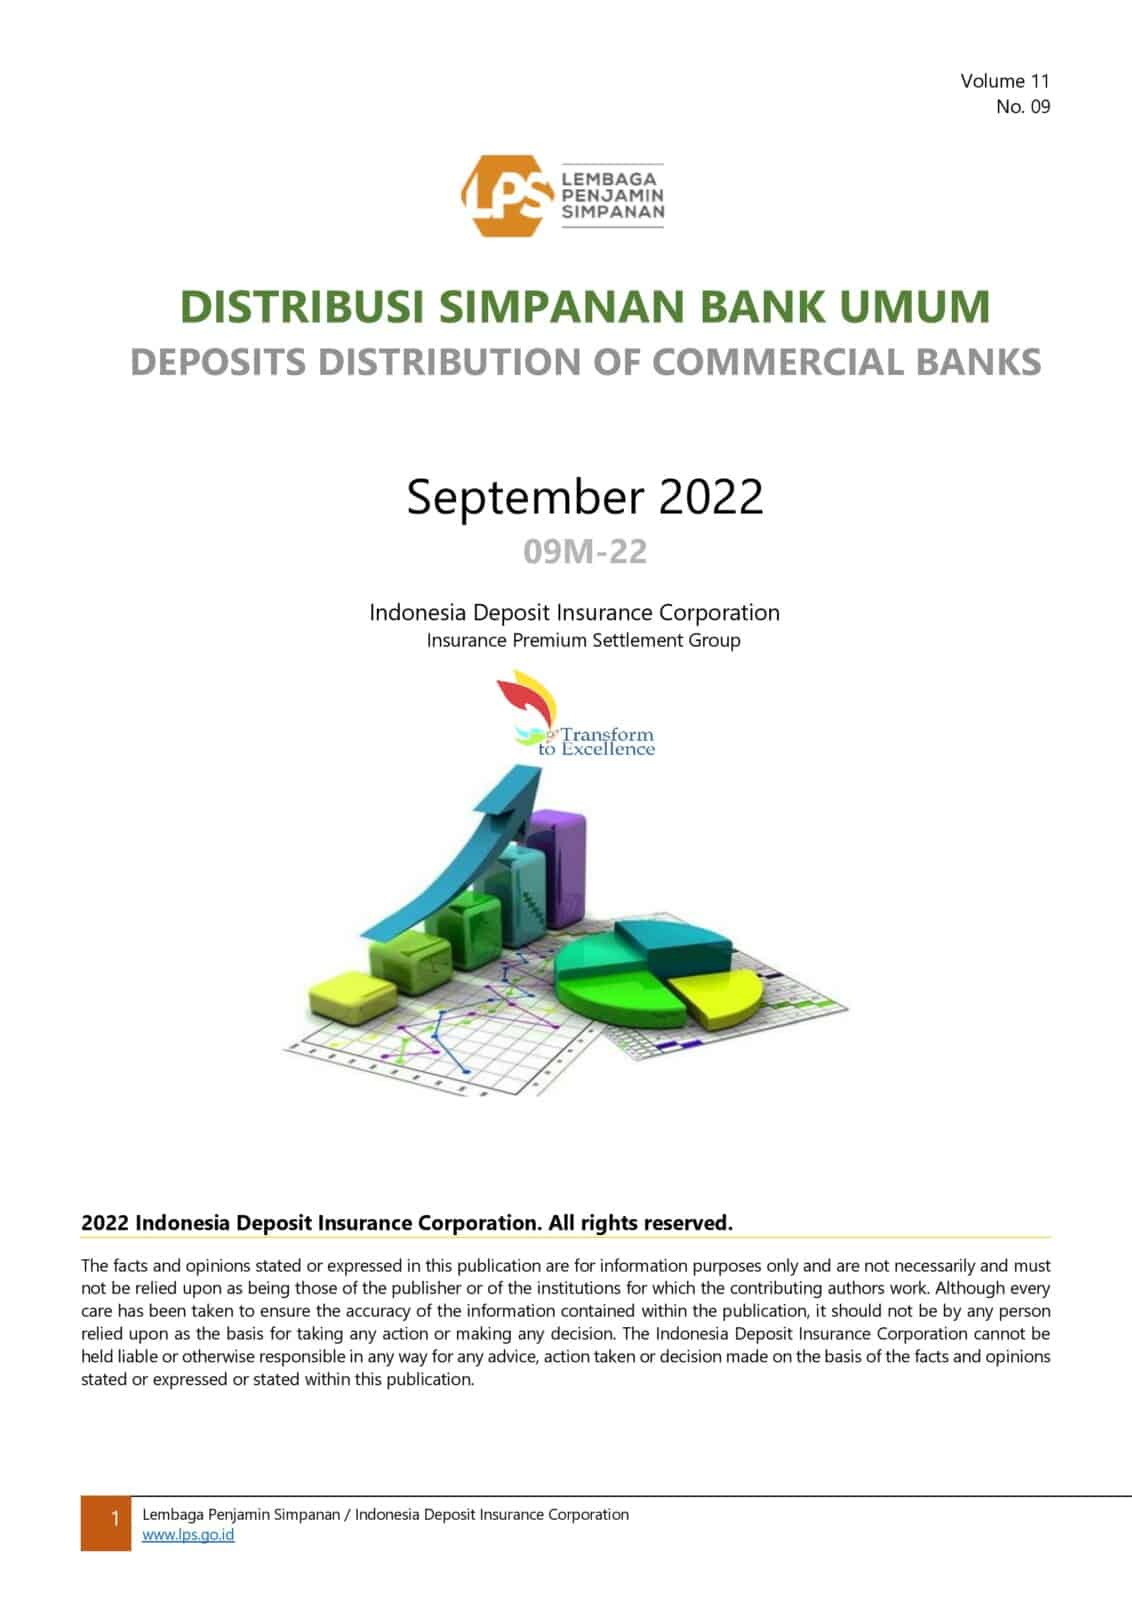 Data Distribusi Simpanan Periode September 2022